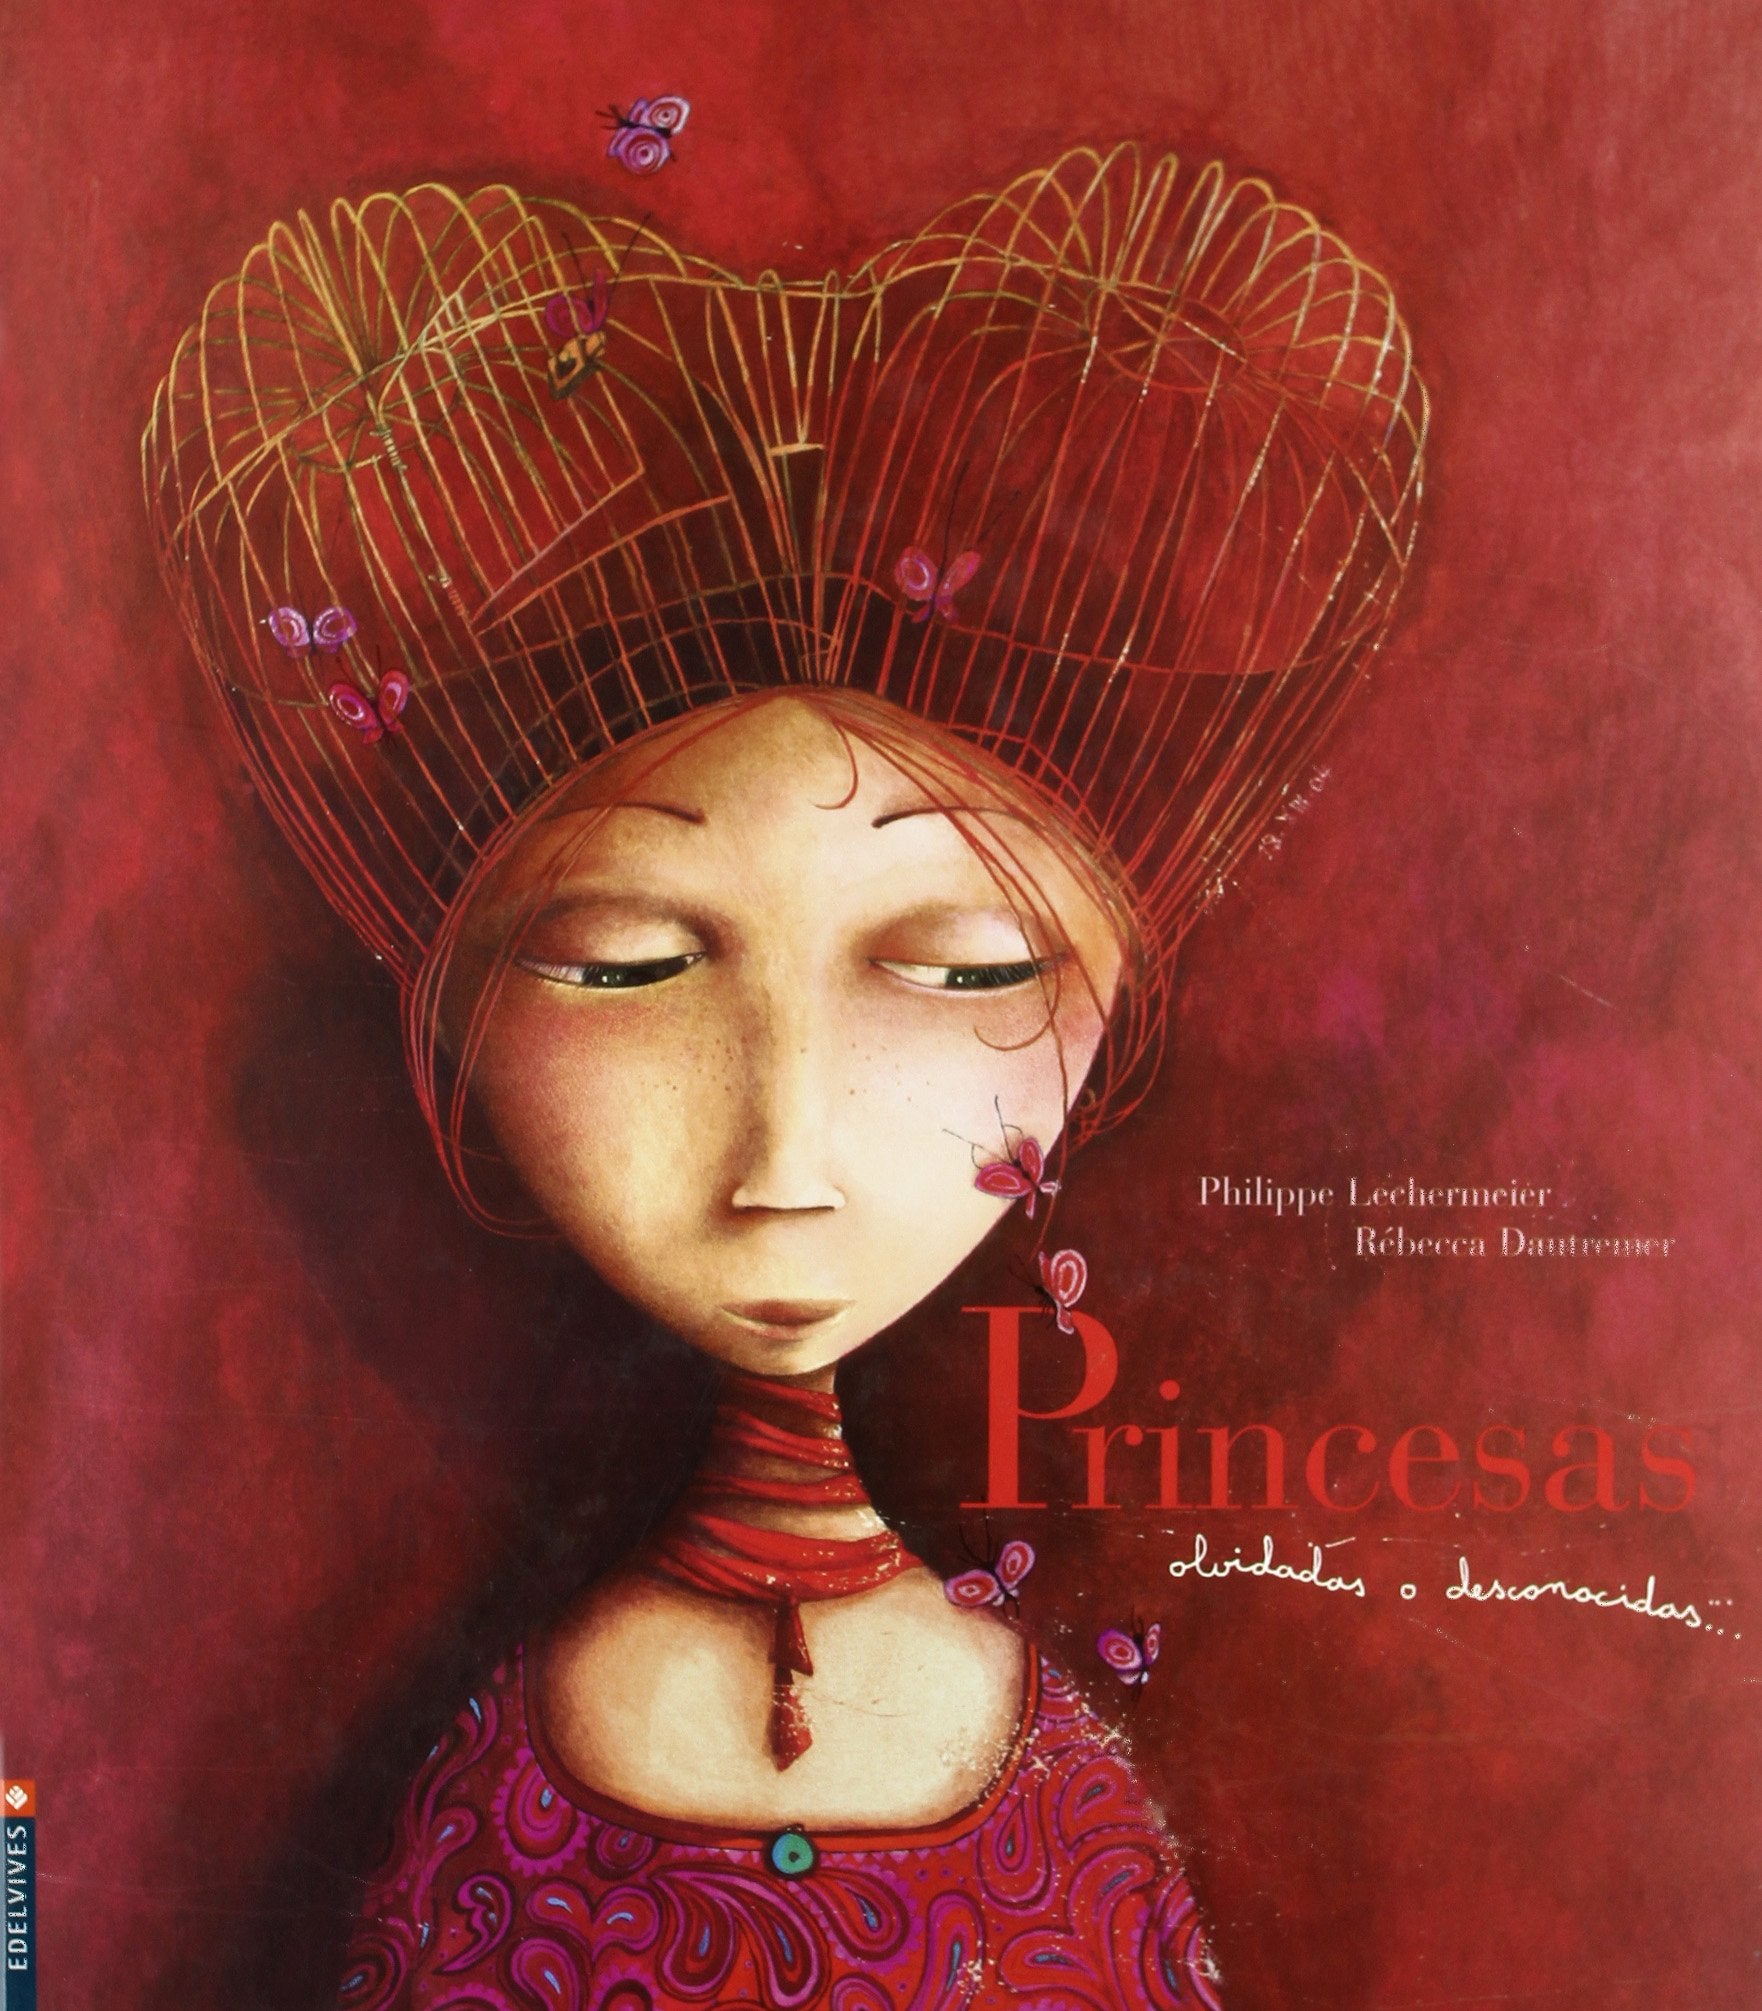 Princesas olvidadas o desconocidas (Álbumes ilustrados)